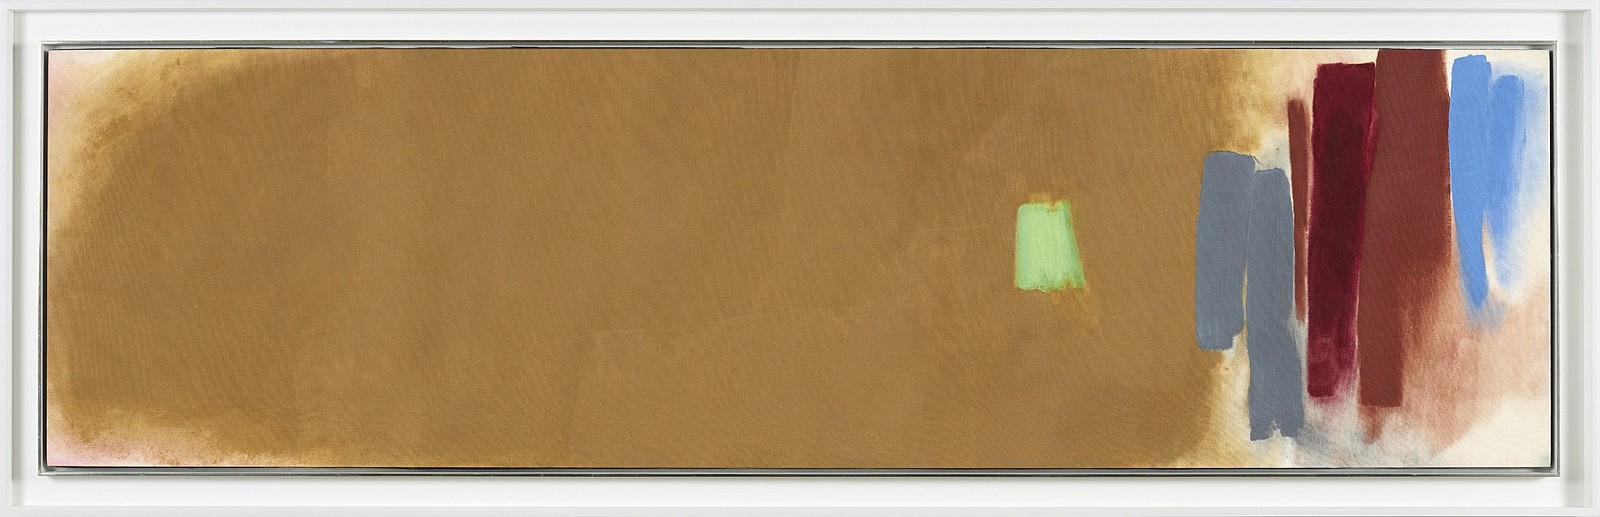 Friedel Dzubas, The Marches II, 1971
Acrylic on canvas, 27 x 97 1/2 in. (68.6 x 247.7 cm)
DZU-00020